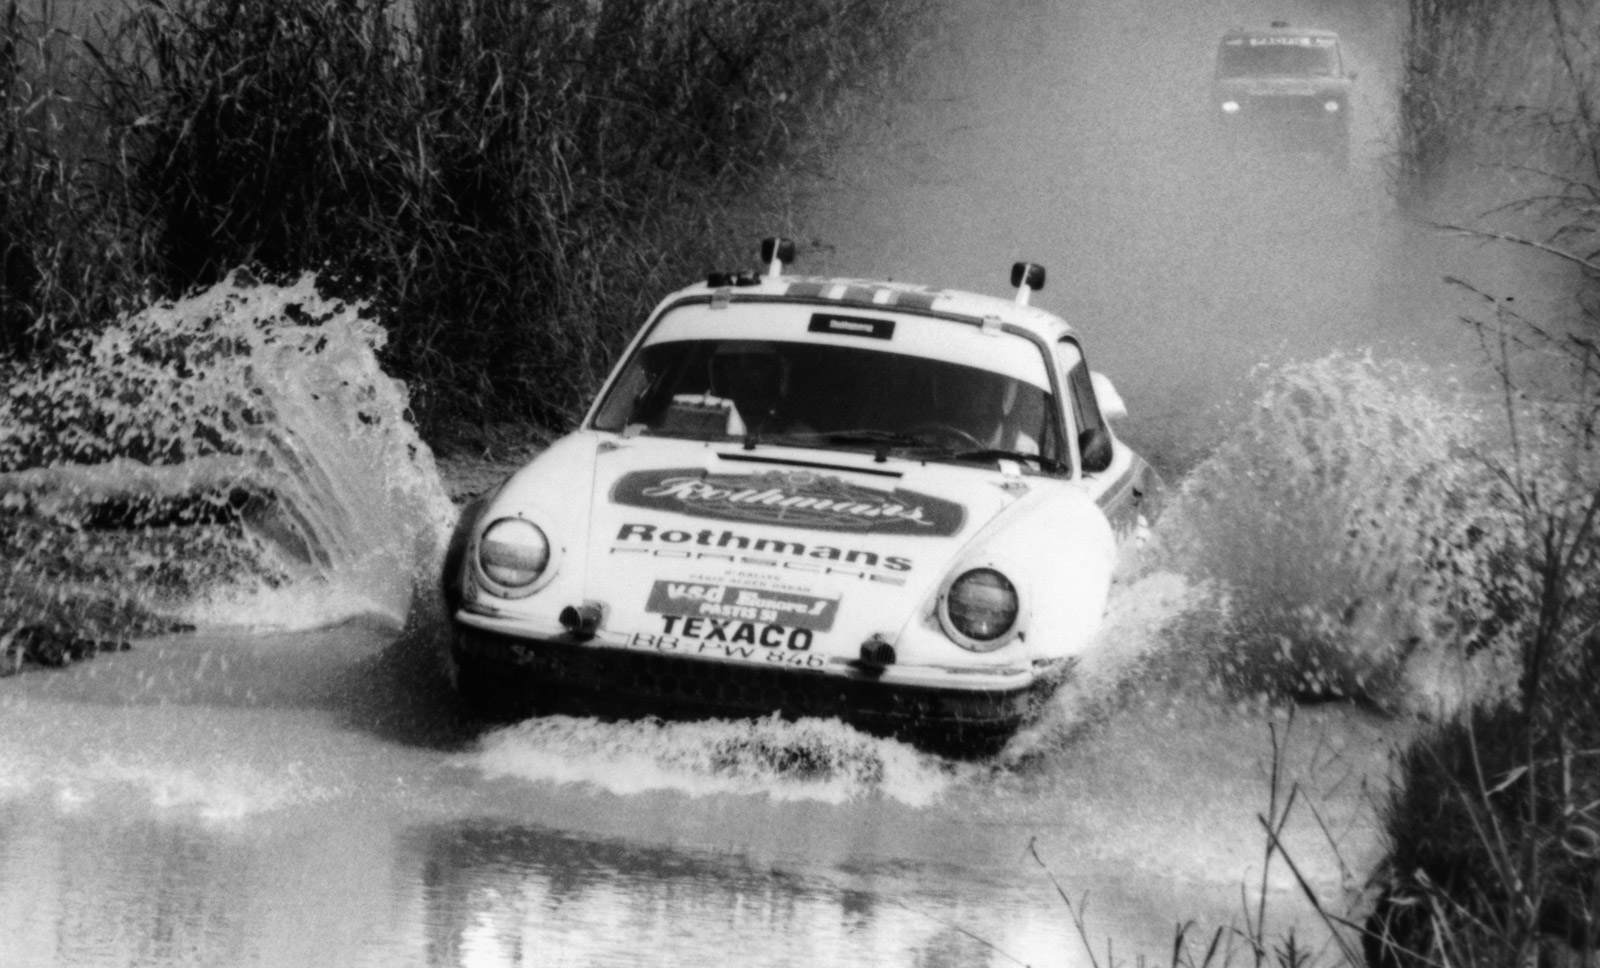 The first all-wheel drive Porsche 911 and winner of the 1984 Paris-Dakar Rally